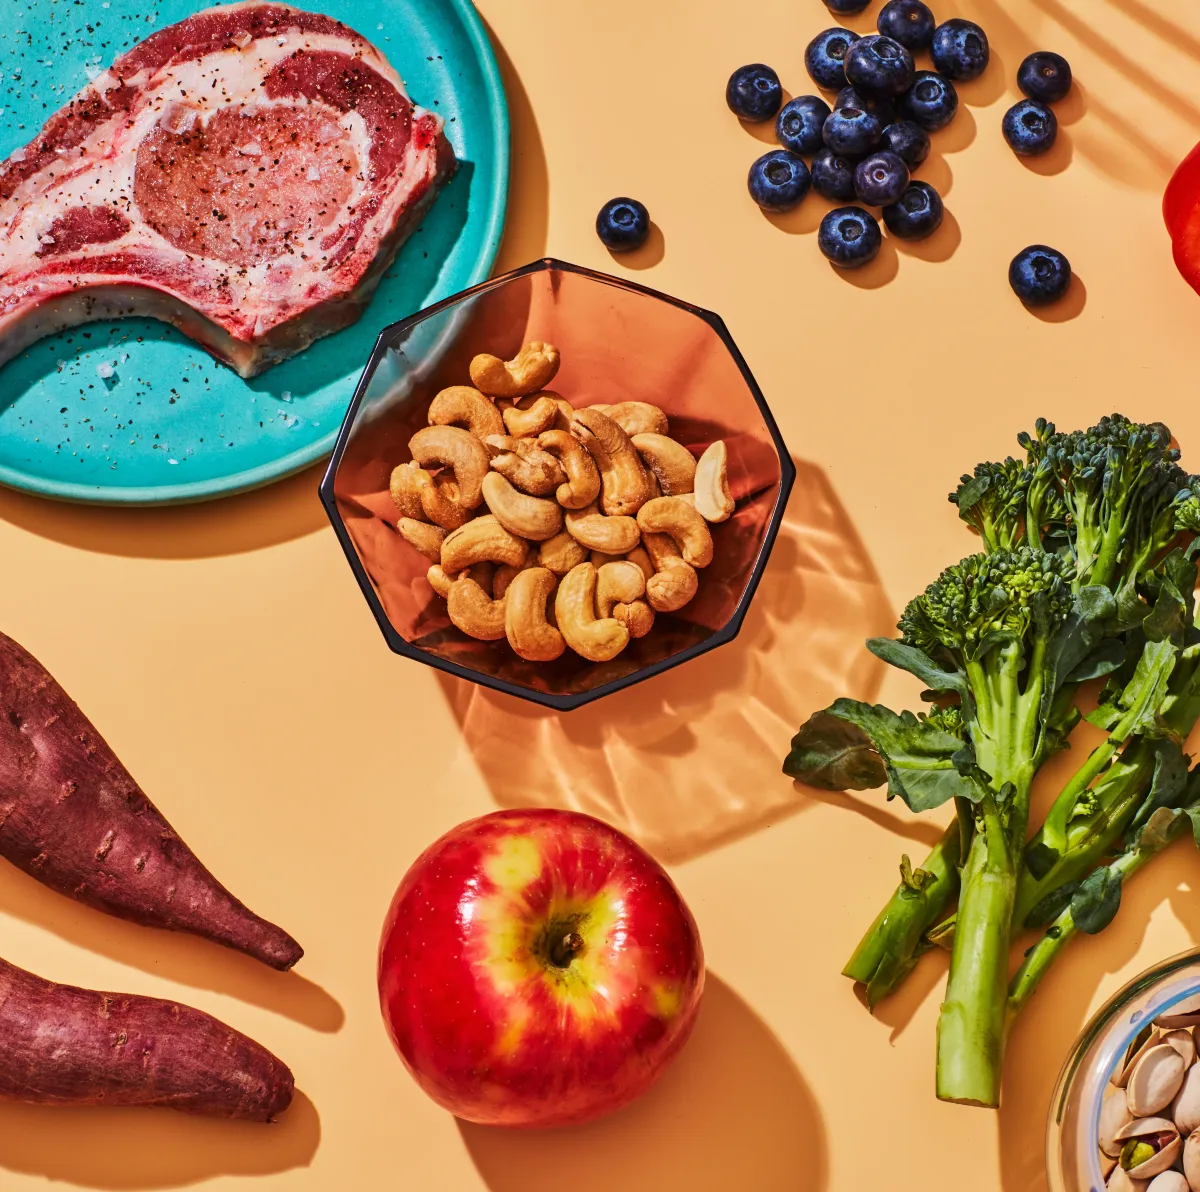 checkliste zum abnehmen nüsse frisches obst und gemüse fleisch essen proteine